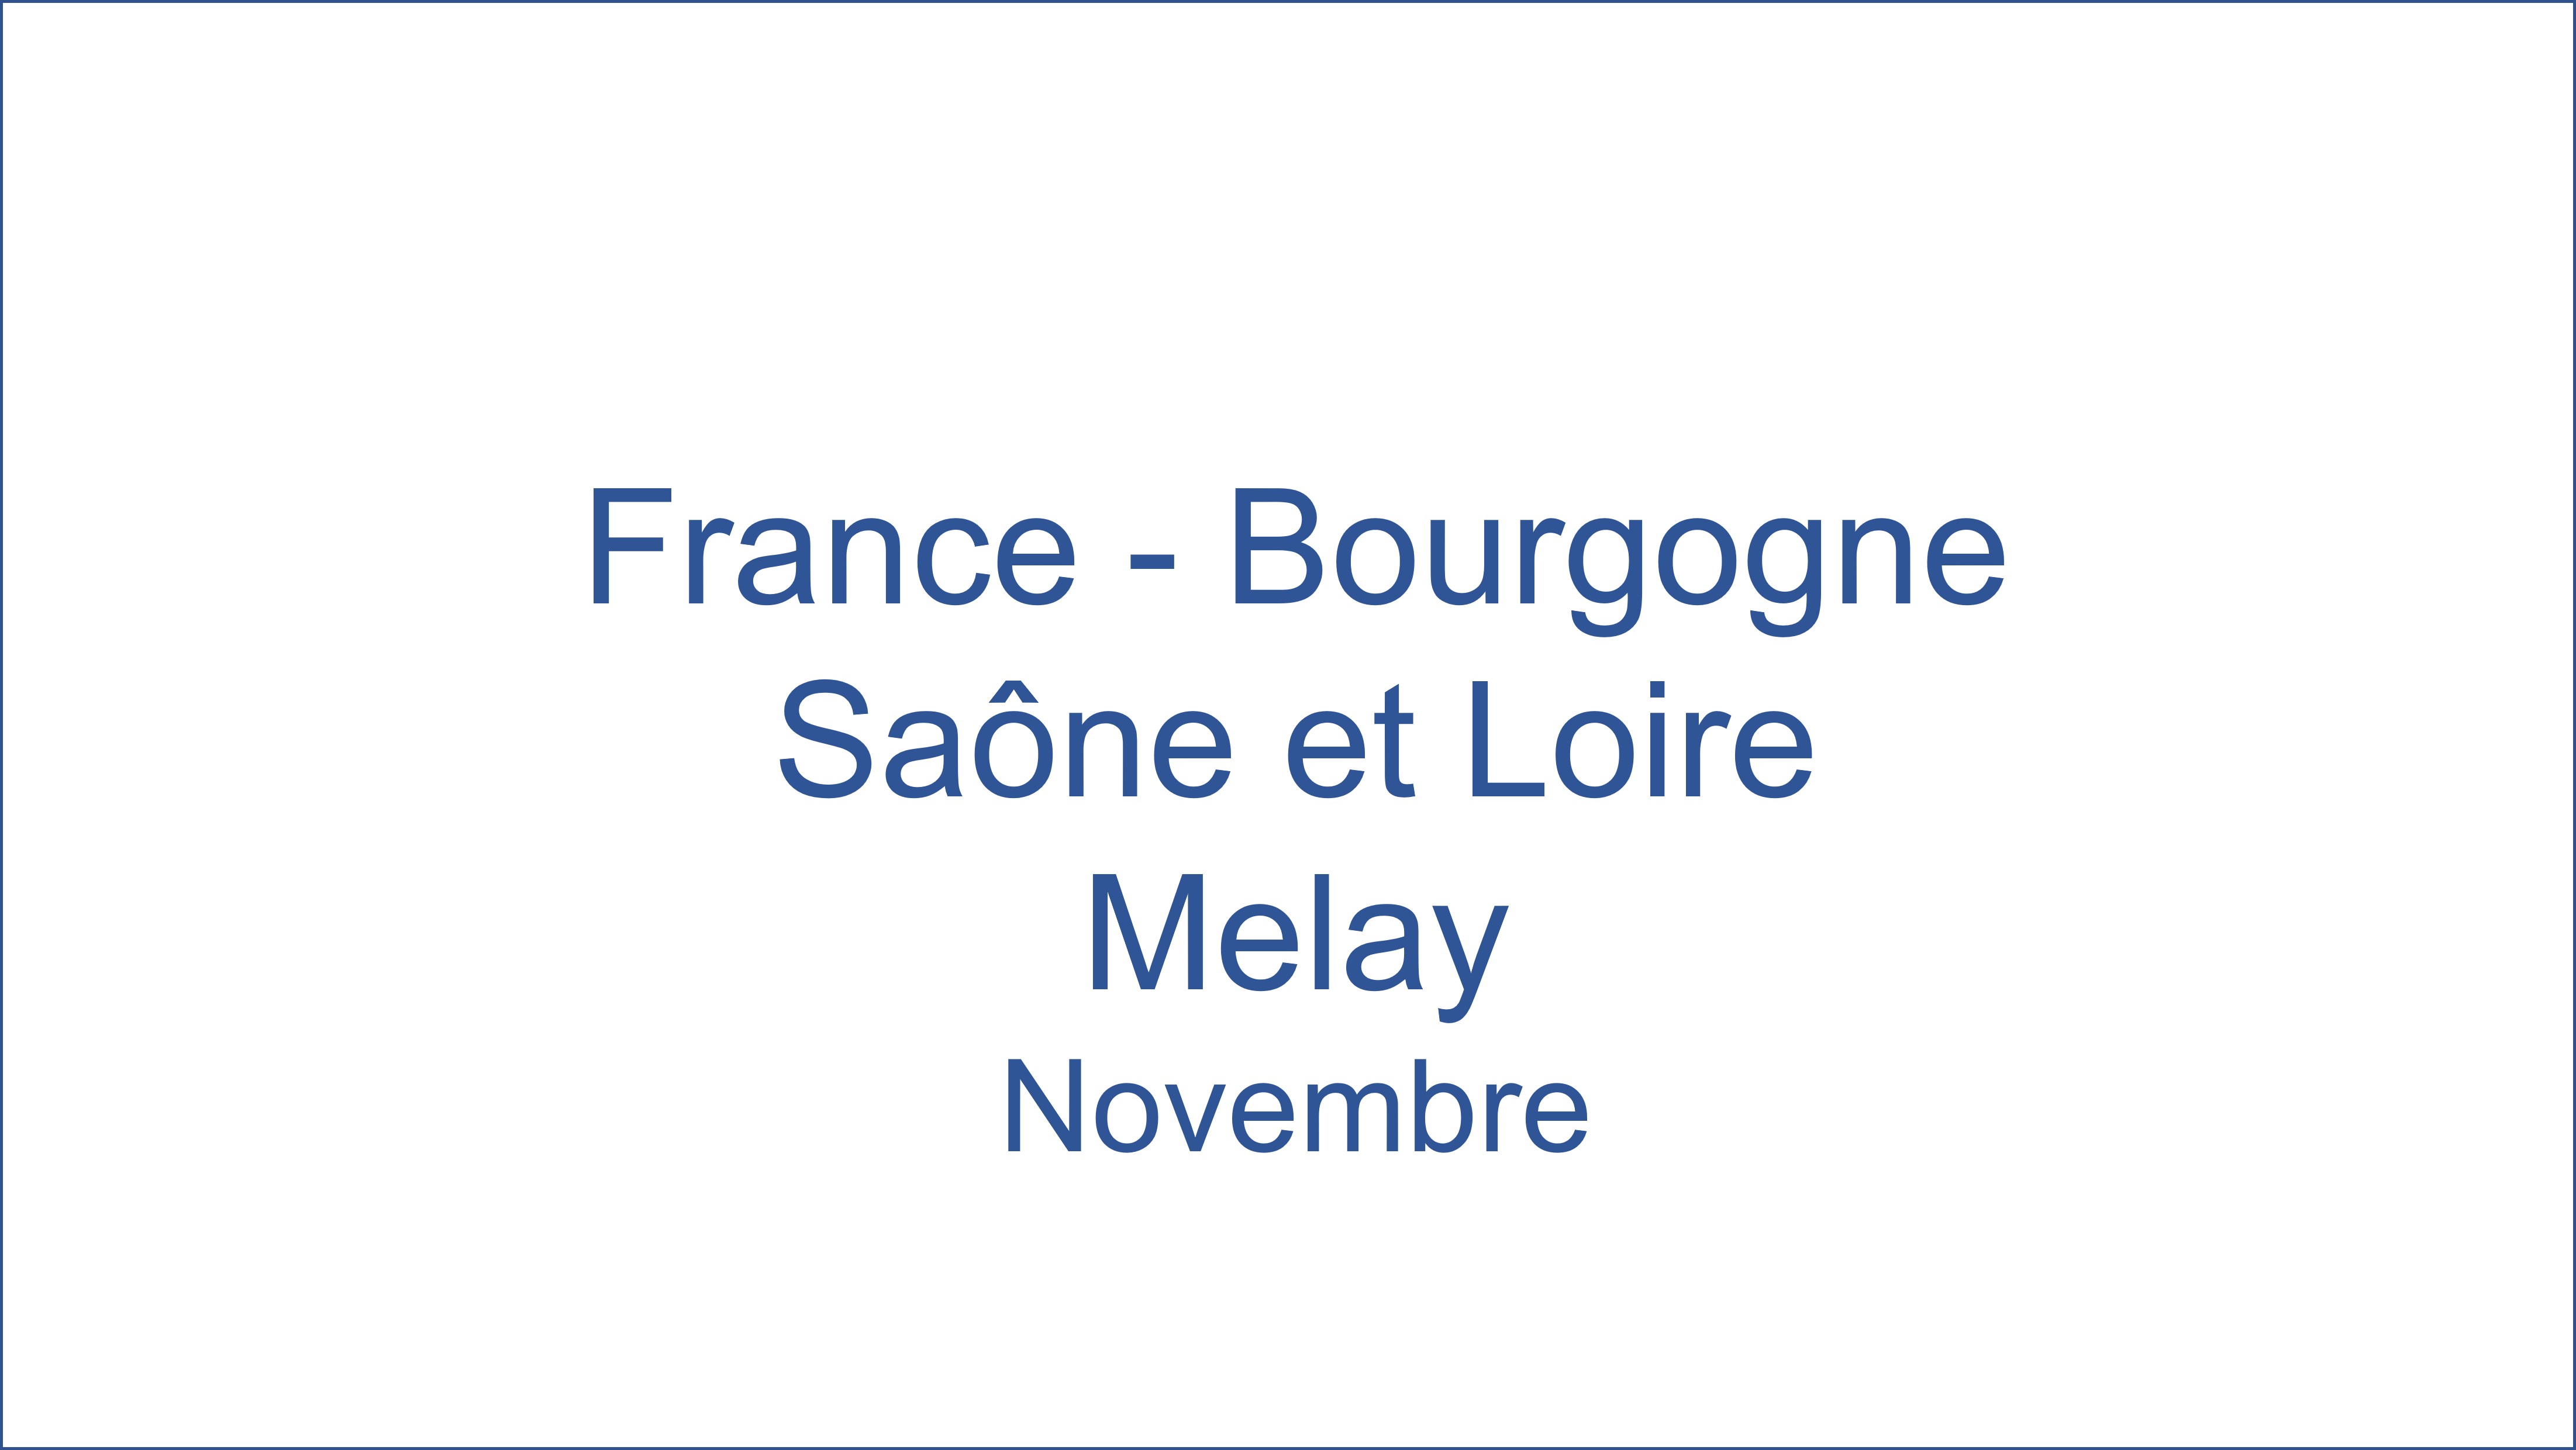 France - Bourgogne Sa�ne et Loire Melay 11/2021